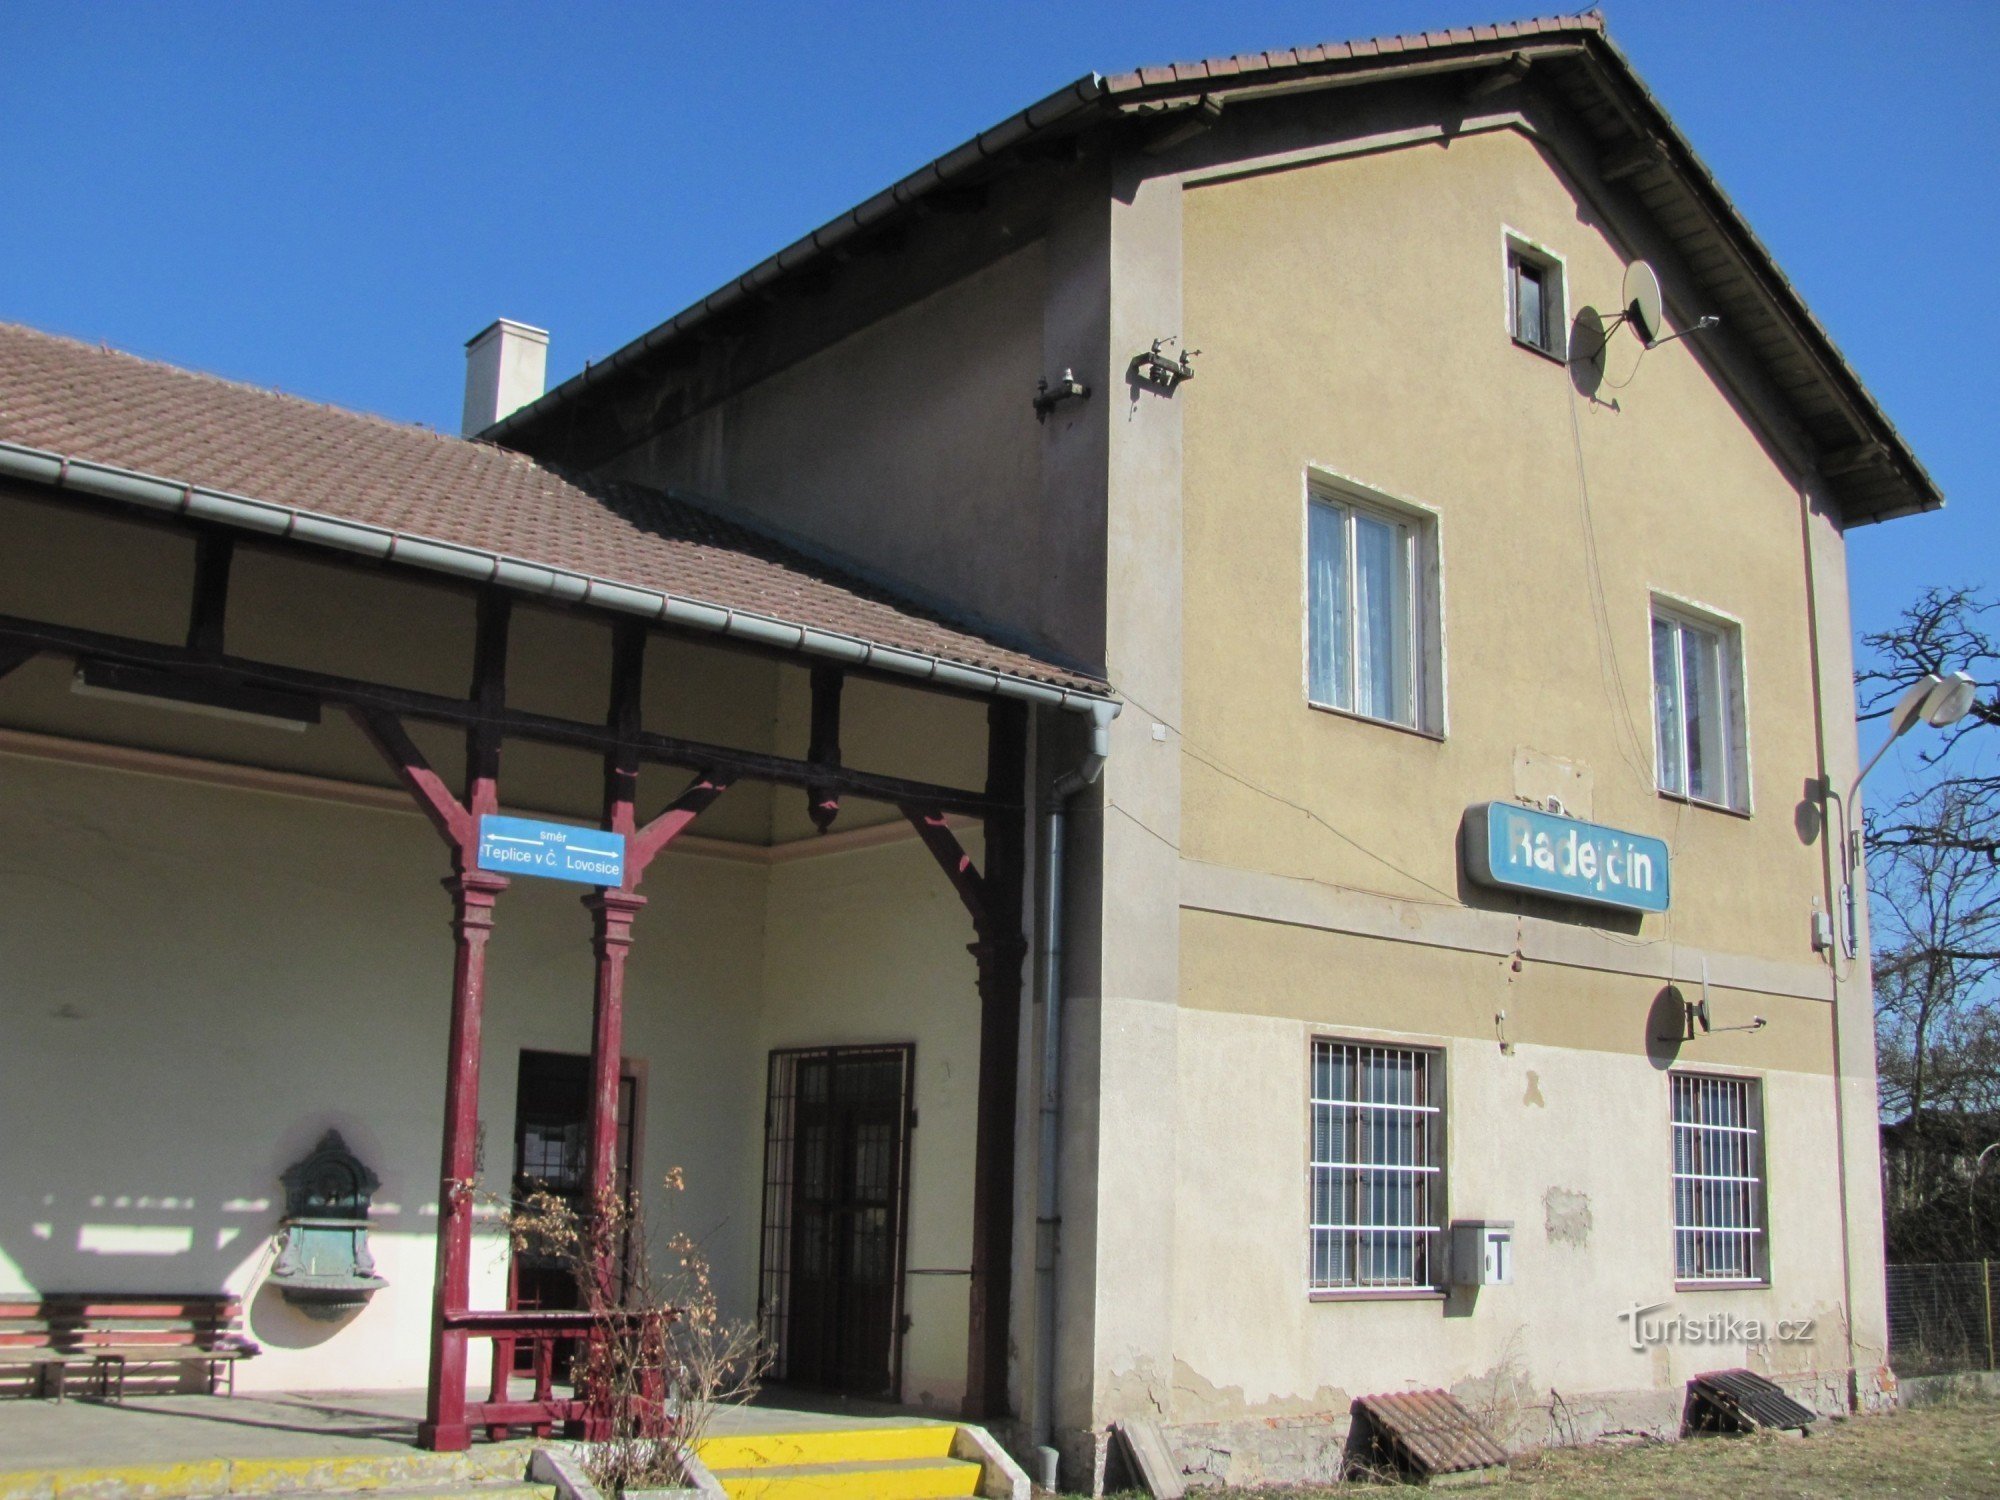 Radejčín station